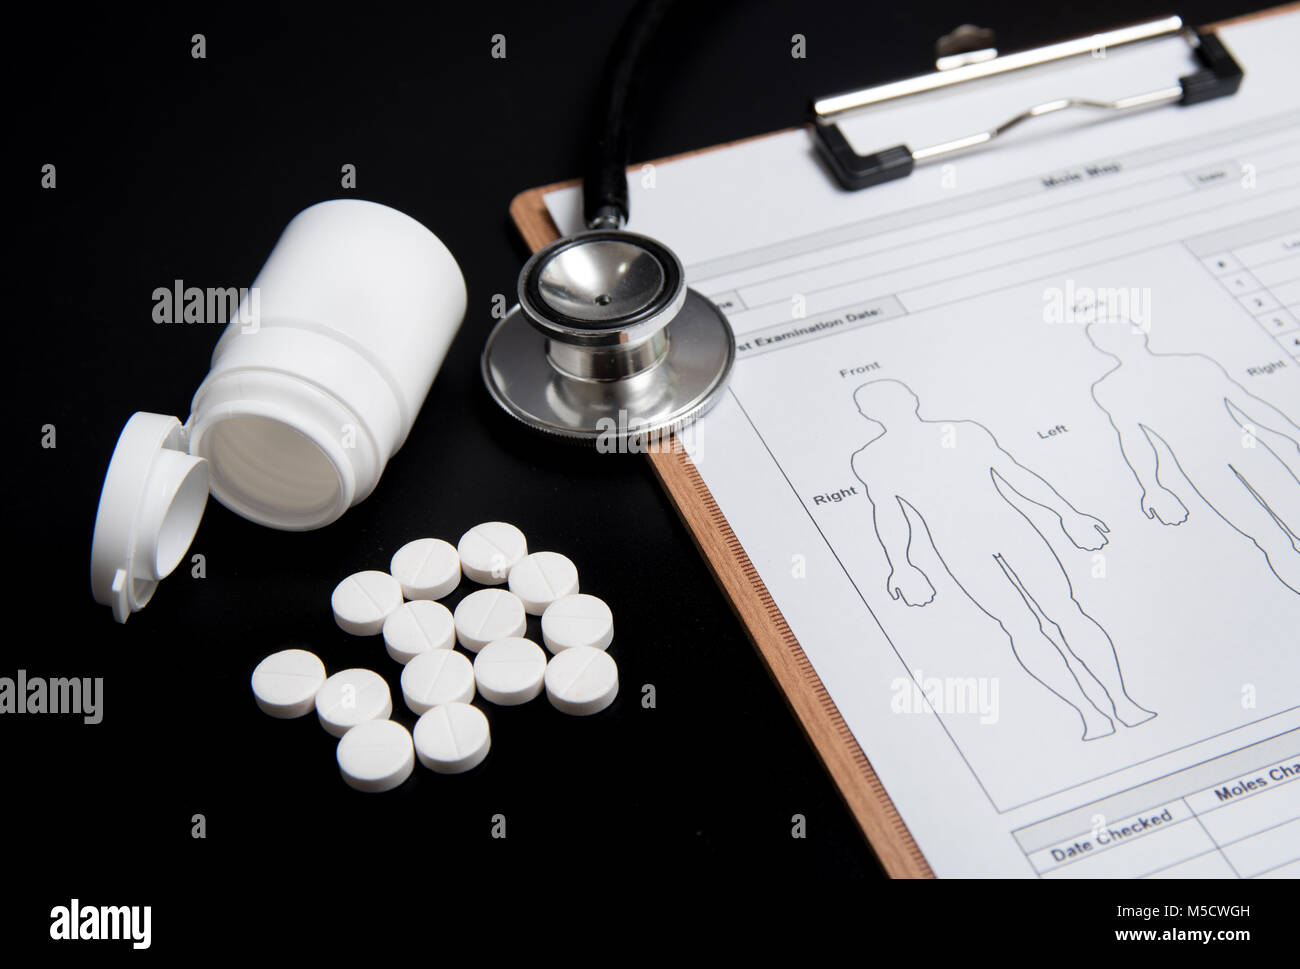 Pastillas de color blanco y una botella blanca, junto con un estetoscopio y una ficha médica, están sobre un fondo negro. Foto de stock